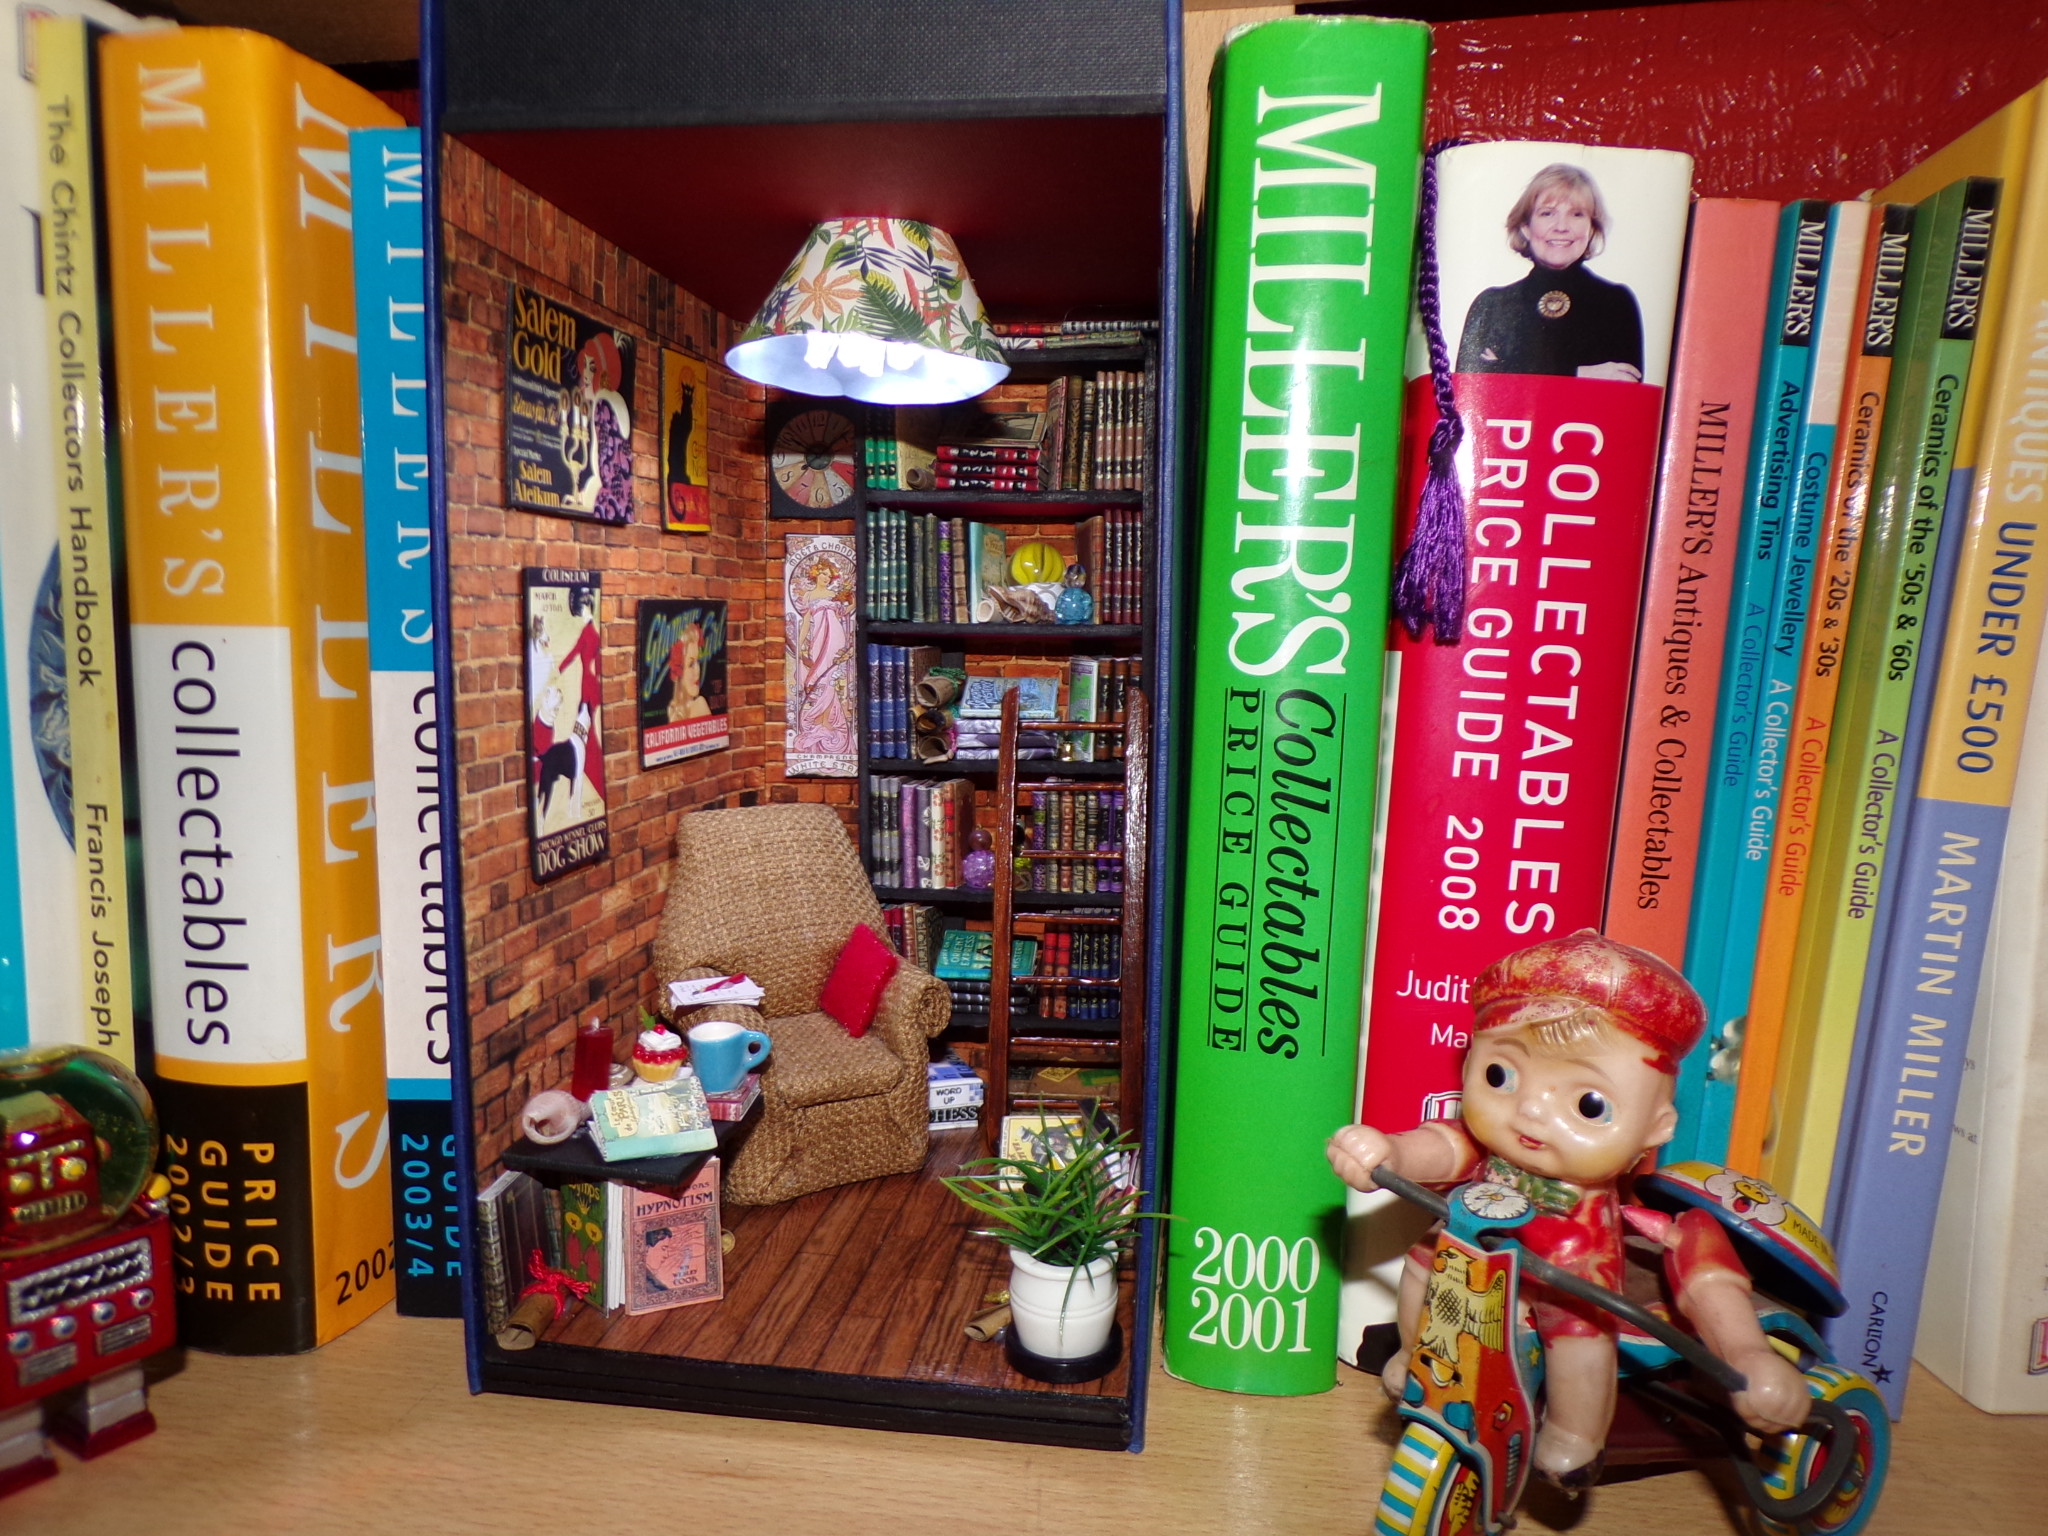 Book Nook shelf dioramas